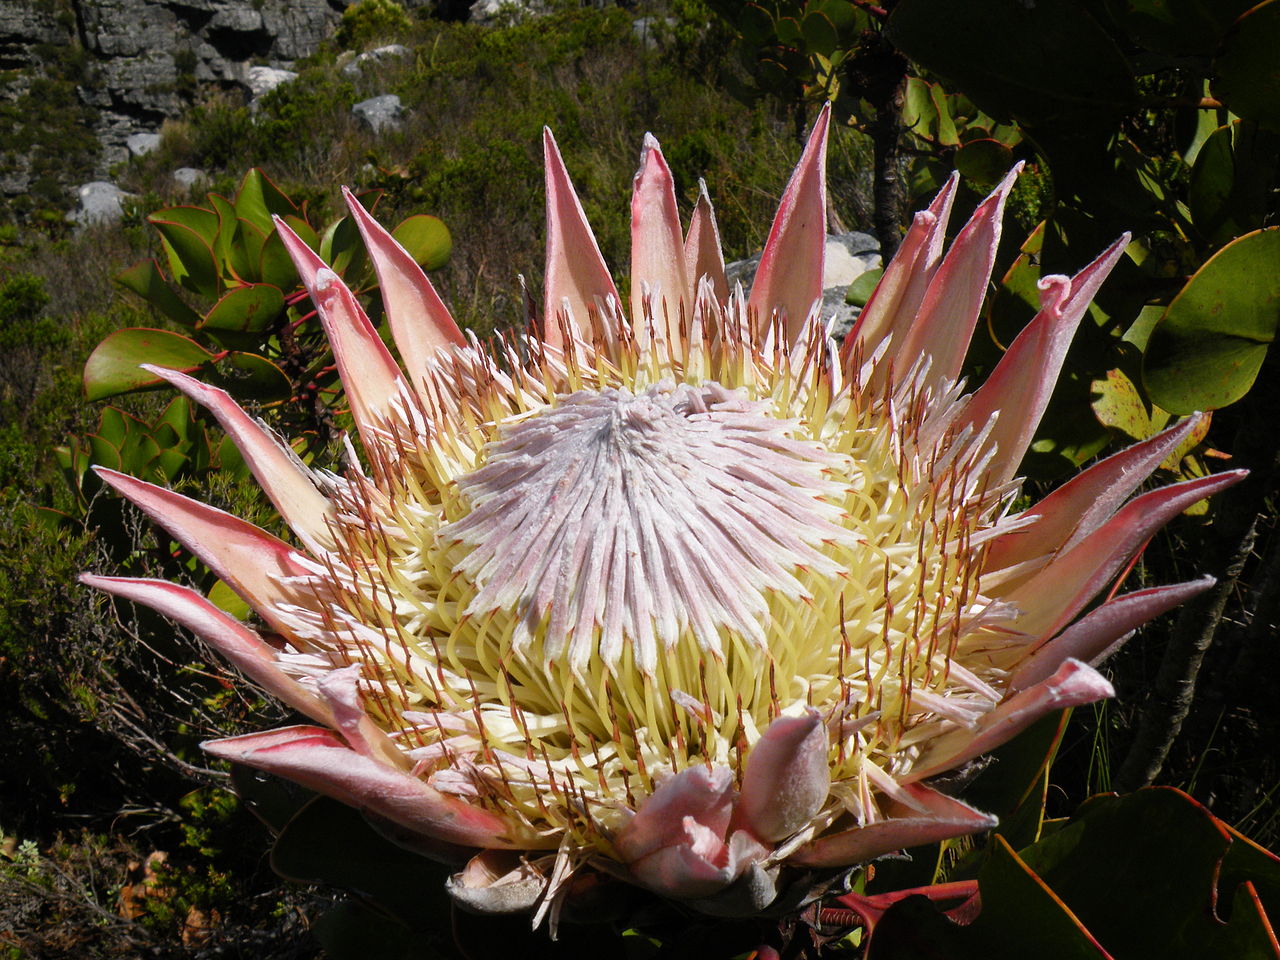 The King Protea, Protea cynaroides